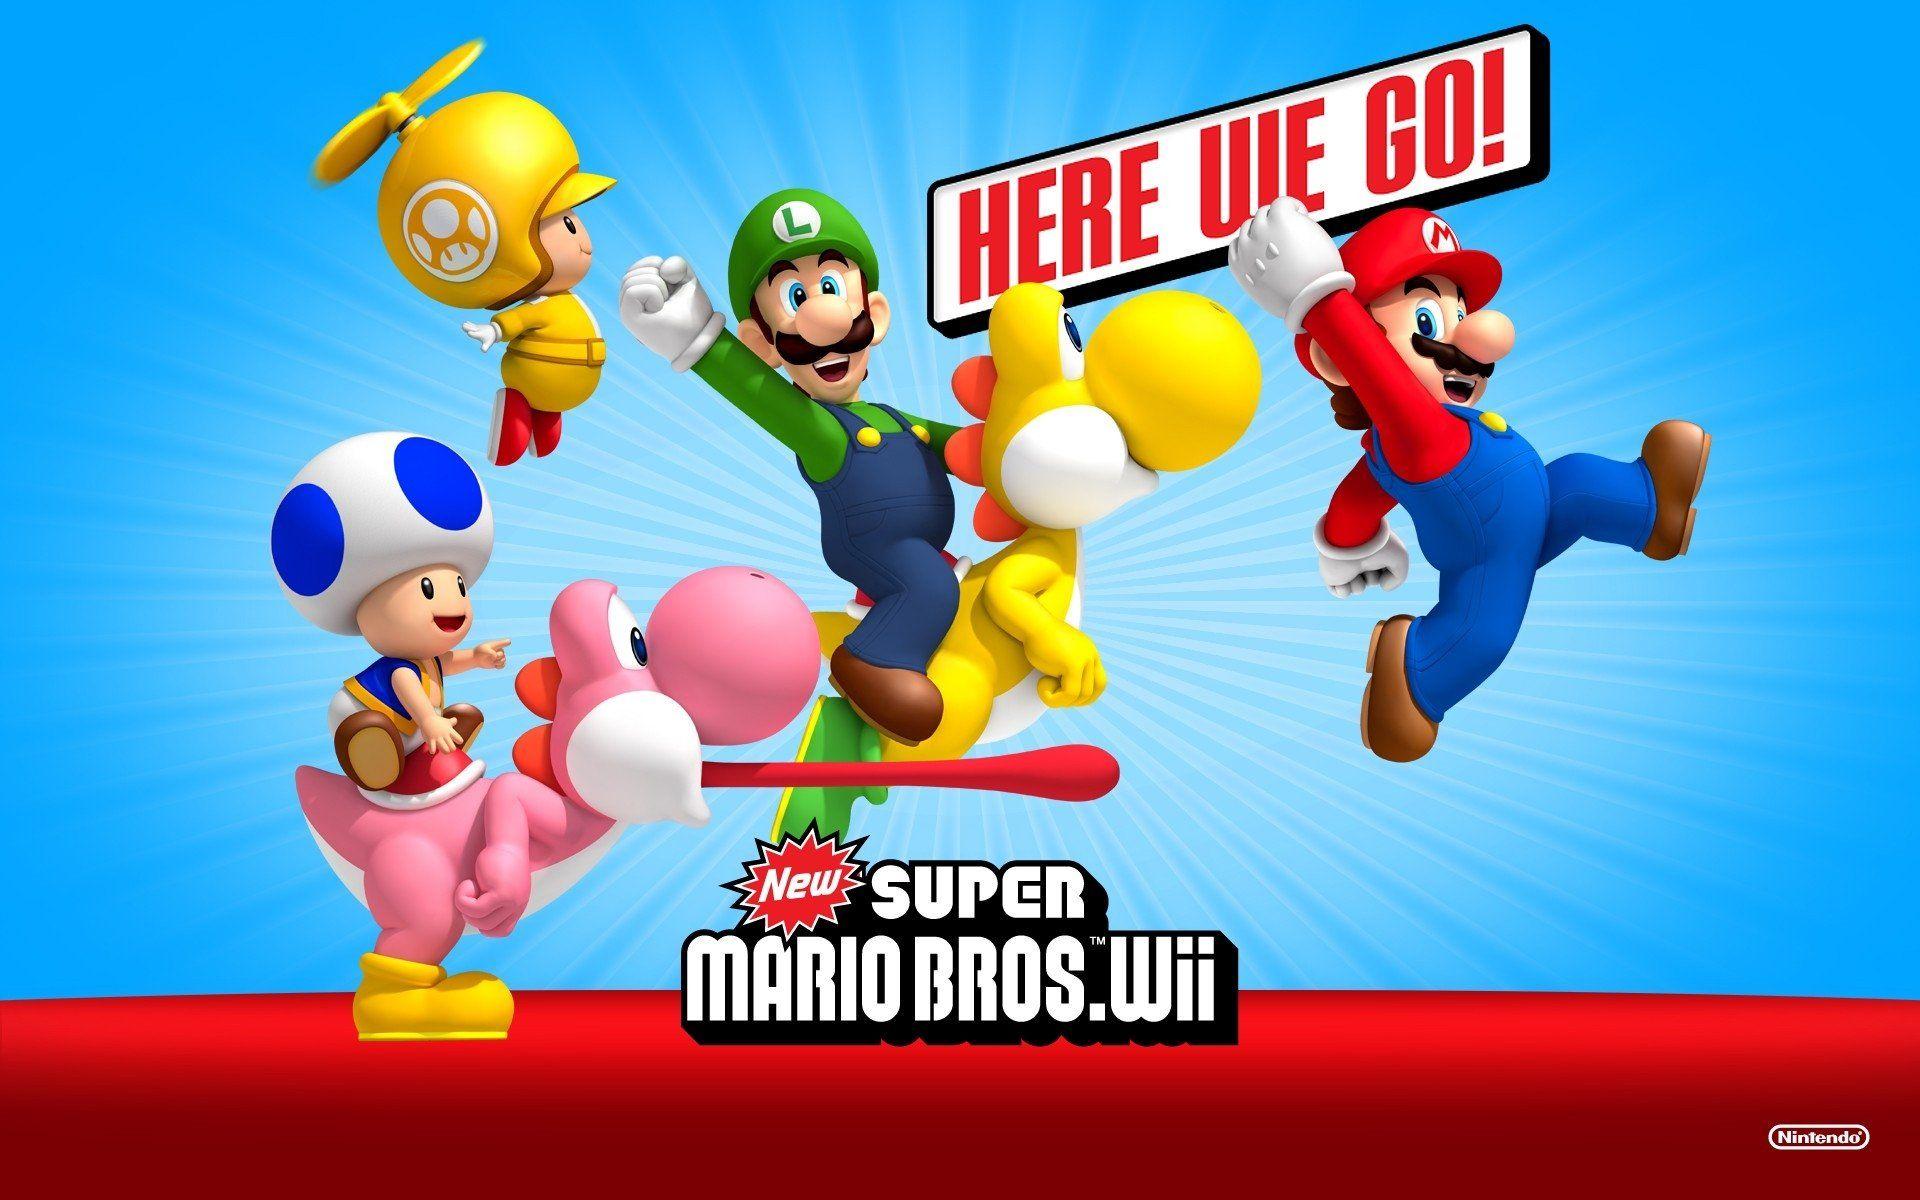 Newer mario bros download. New super Mario Bros. 2 Nintendo Wii. Super Mario Bros. 3 Wii. New super Mario Bros Wii. New super Mario Bros 2 Wii.